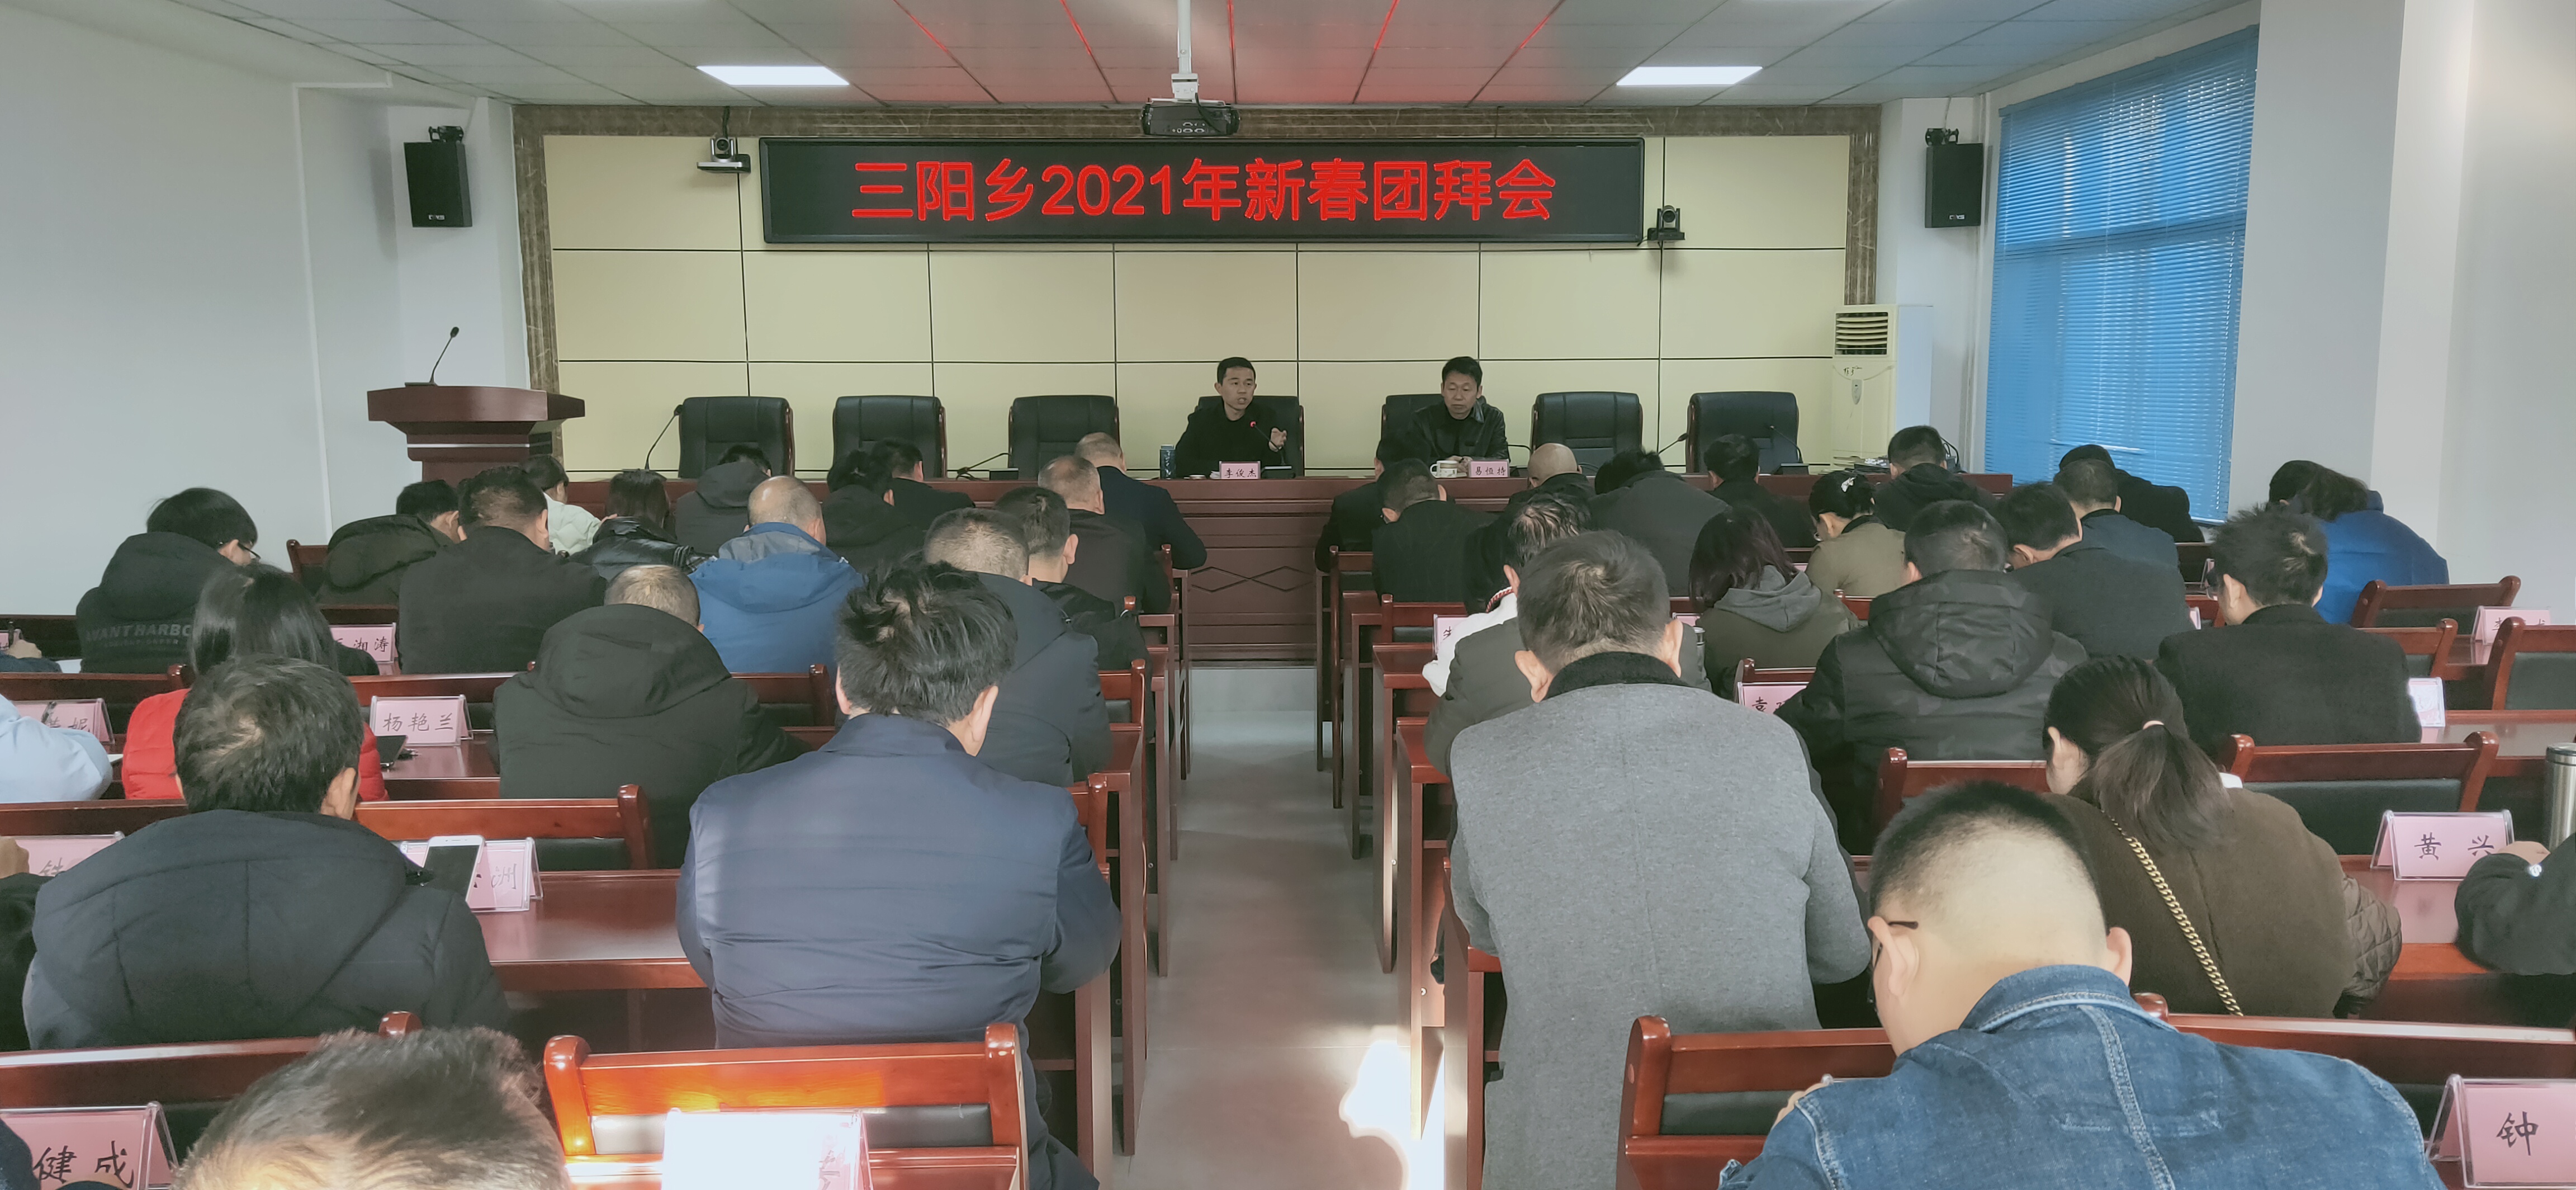 三阳乡举行2021年新春团拜会